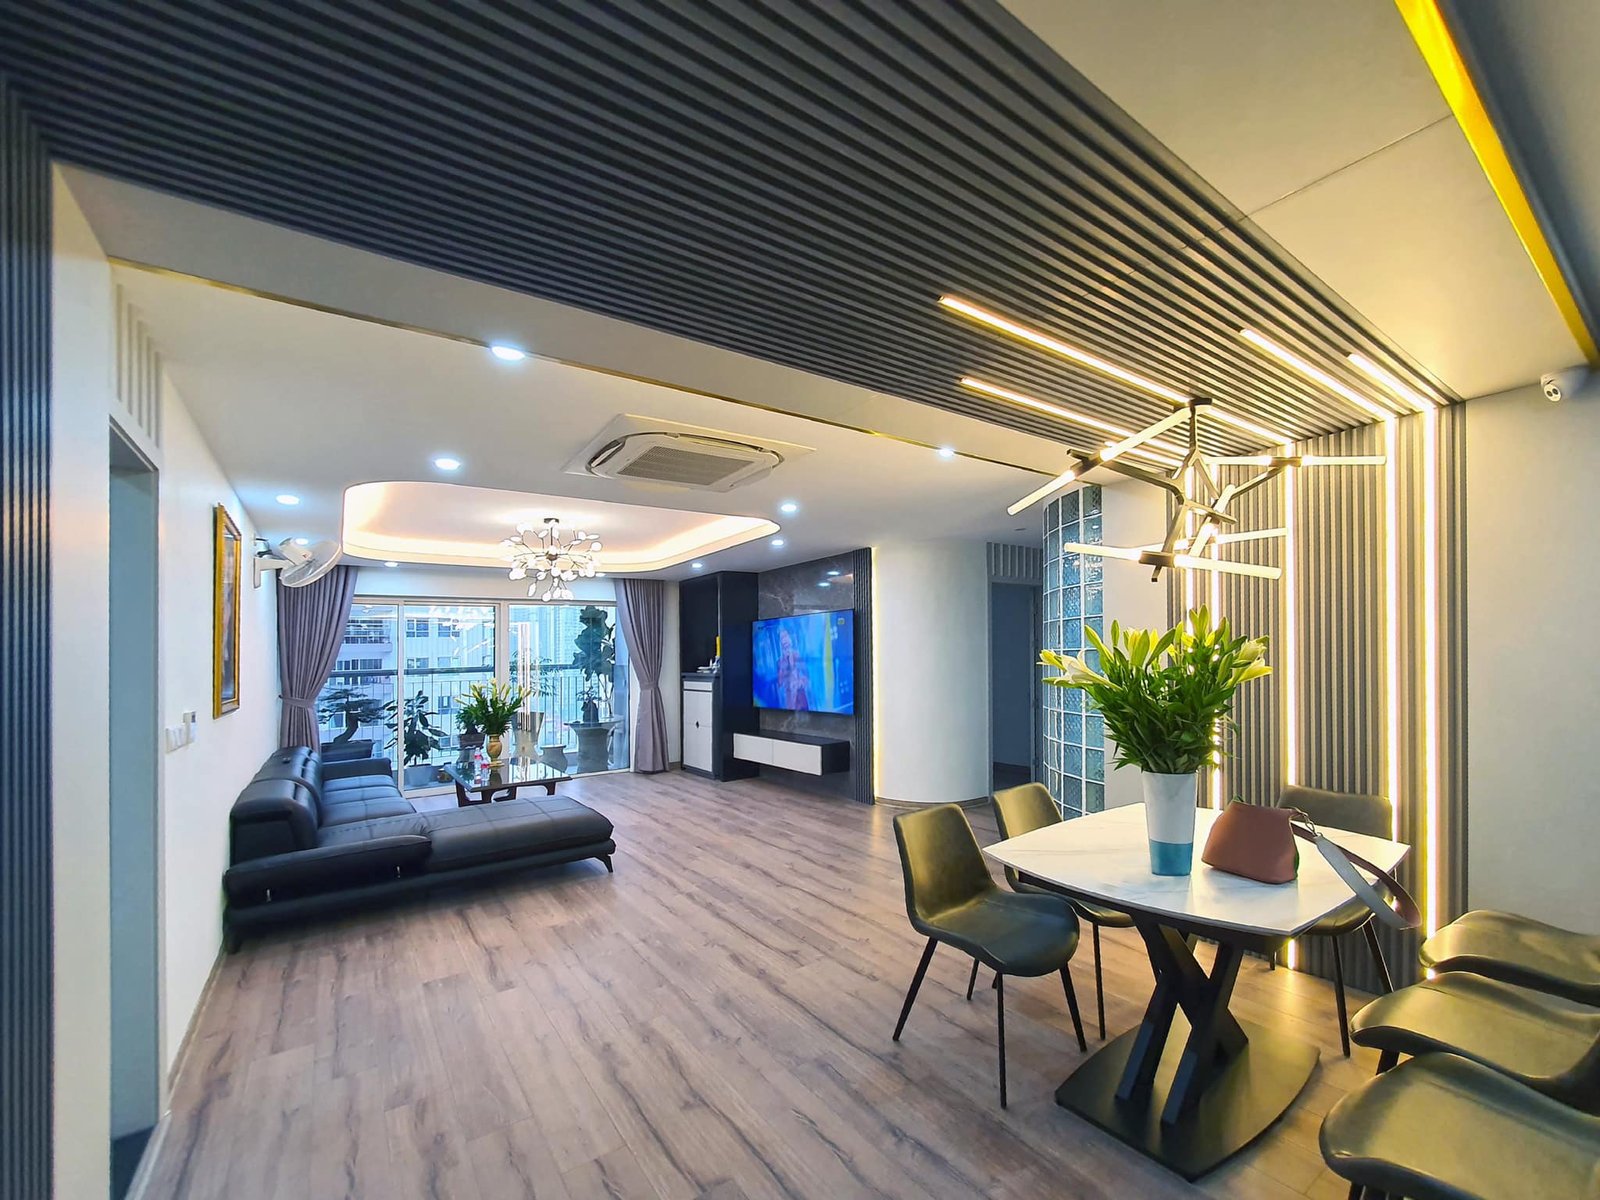 Lối bày trí nội thất chung cư đơn giản vừa giúp tối ưu diện tích tạo lối đi lớn và không gian thông thoáng.